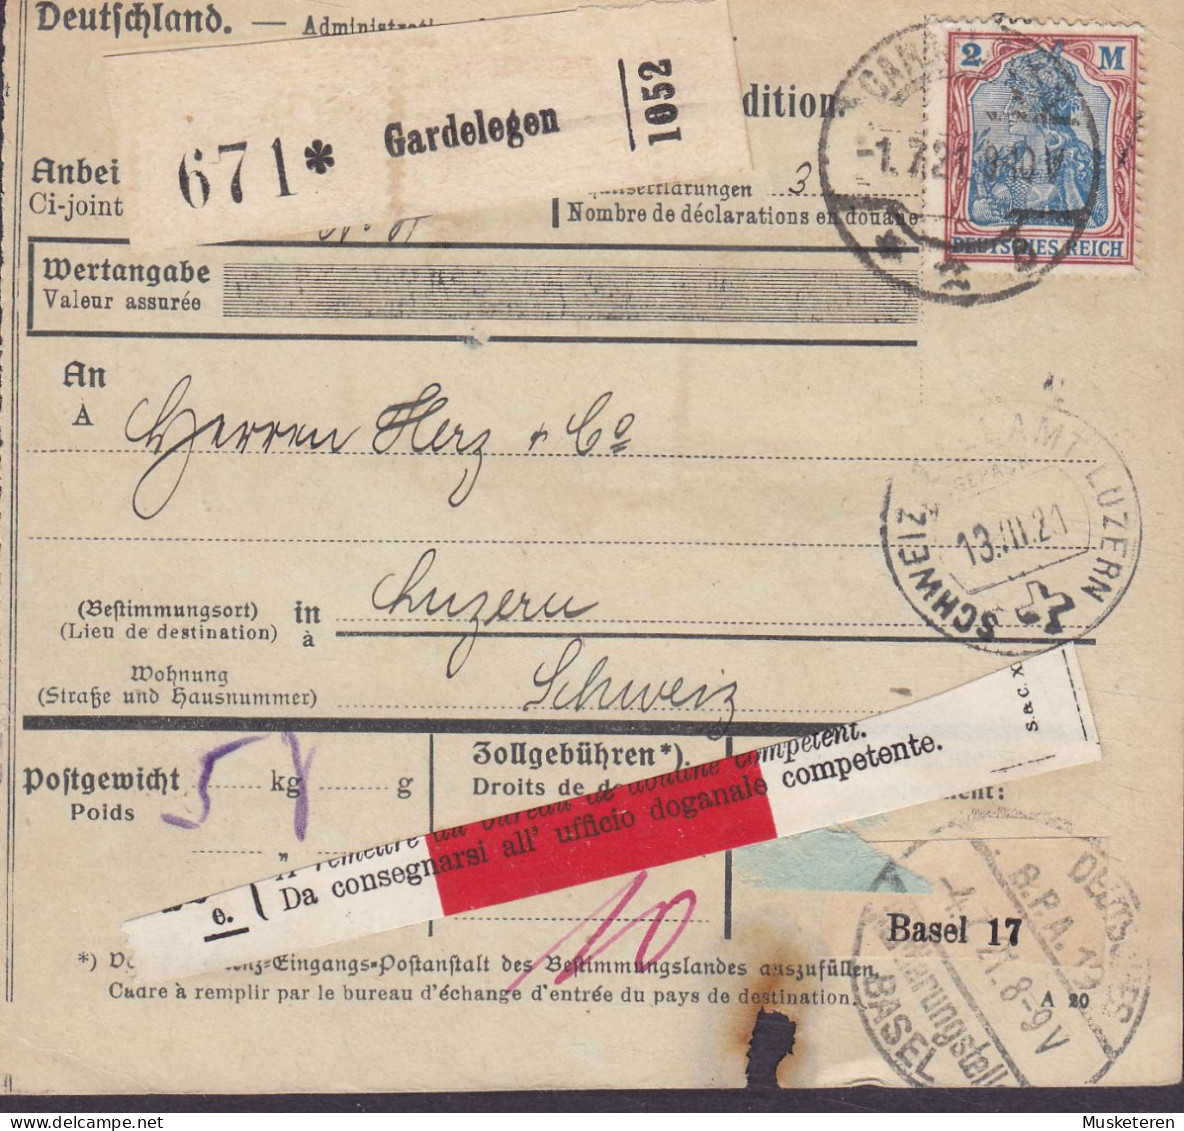 Deutsches Reich Paketkarte Bulletin D'Expedition Freight Card GARDELEGEN 1921 LUZERN Schweiz 'doganale Competente' Label - Covers & Documents